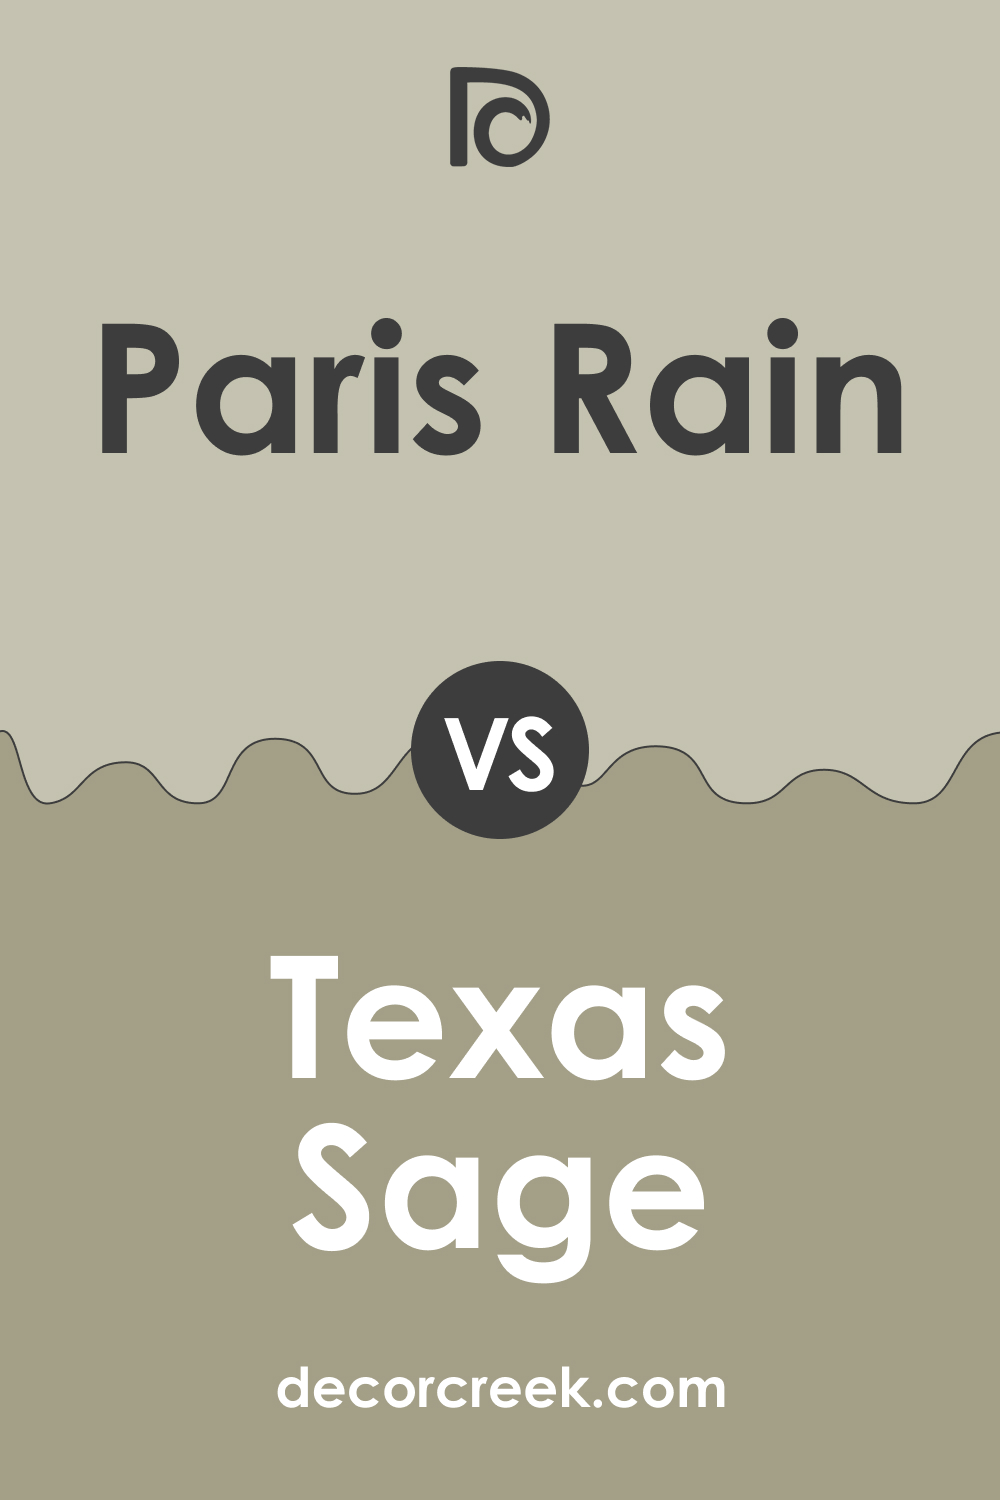 Paris Rain 1501 vs. BM 1503 Texas Sage